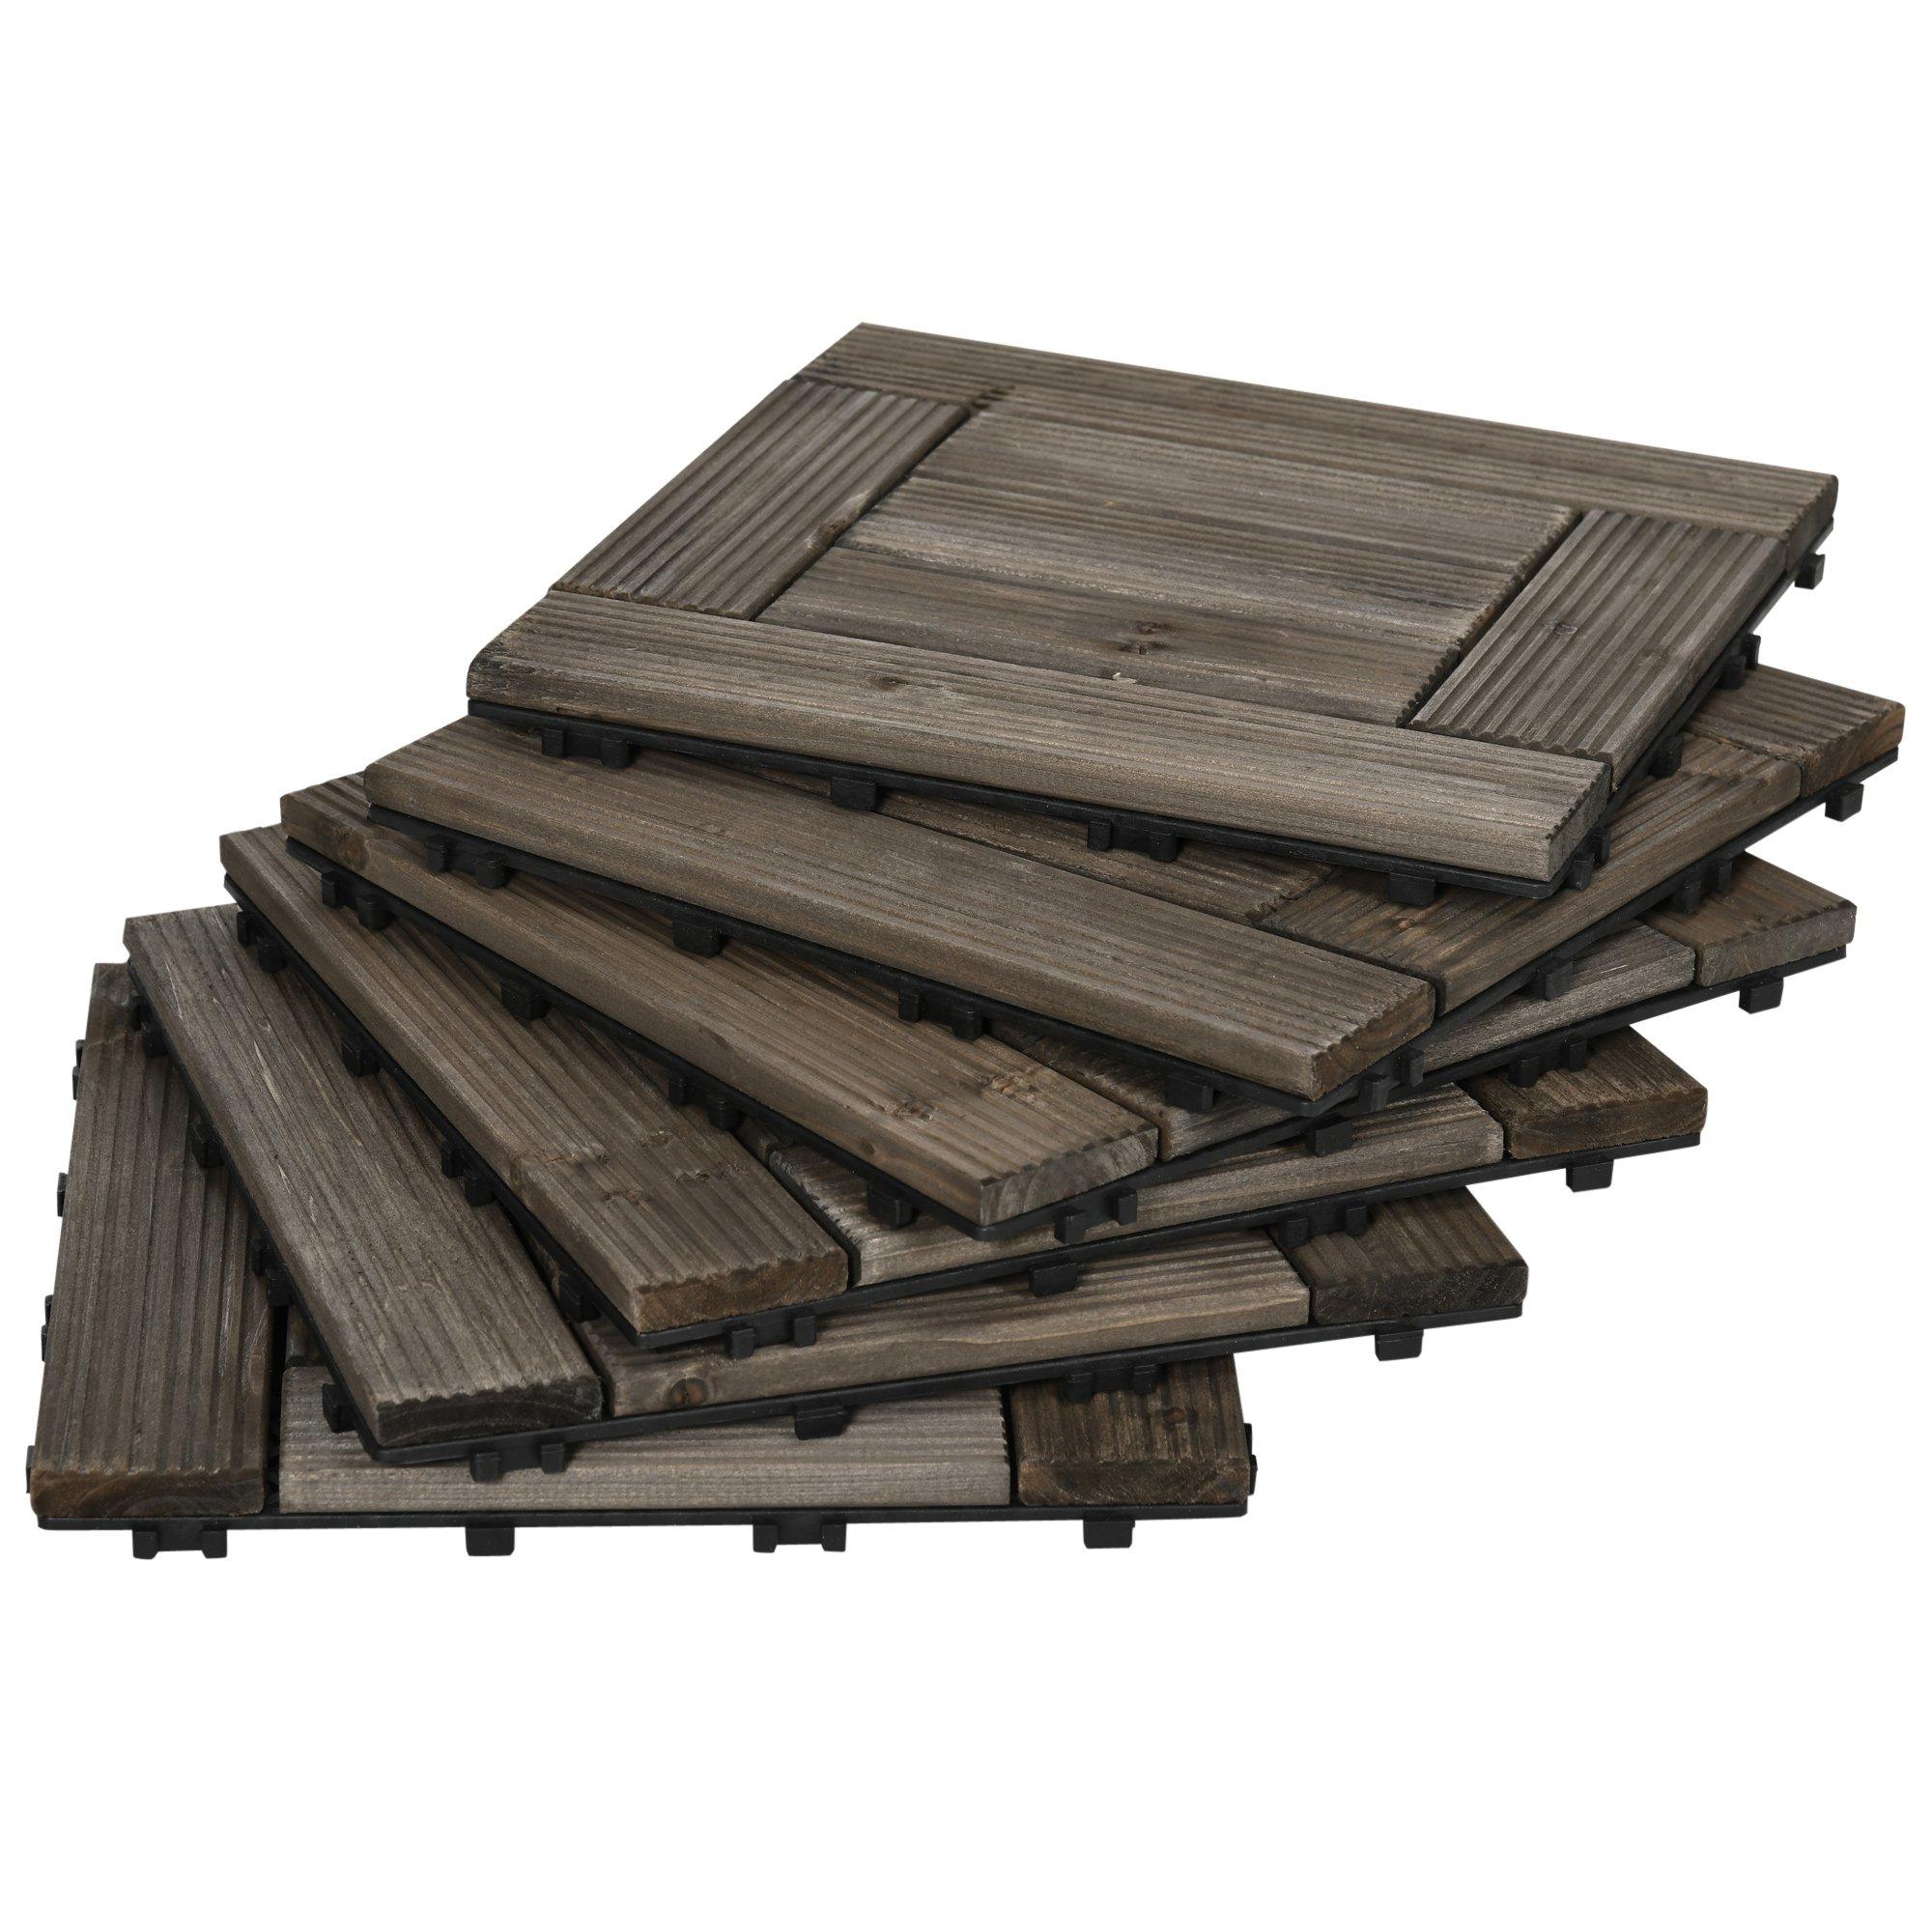 Set of 27 Wooden Interlocking Decking Tiles, 30 x 30 cm, Total 2.5m^2, Grey